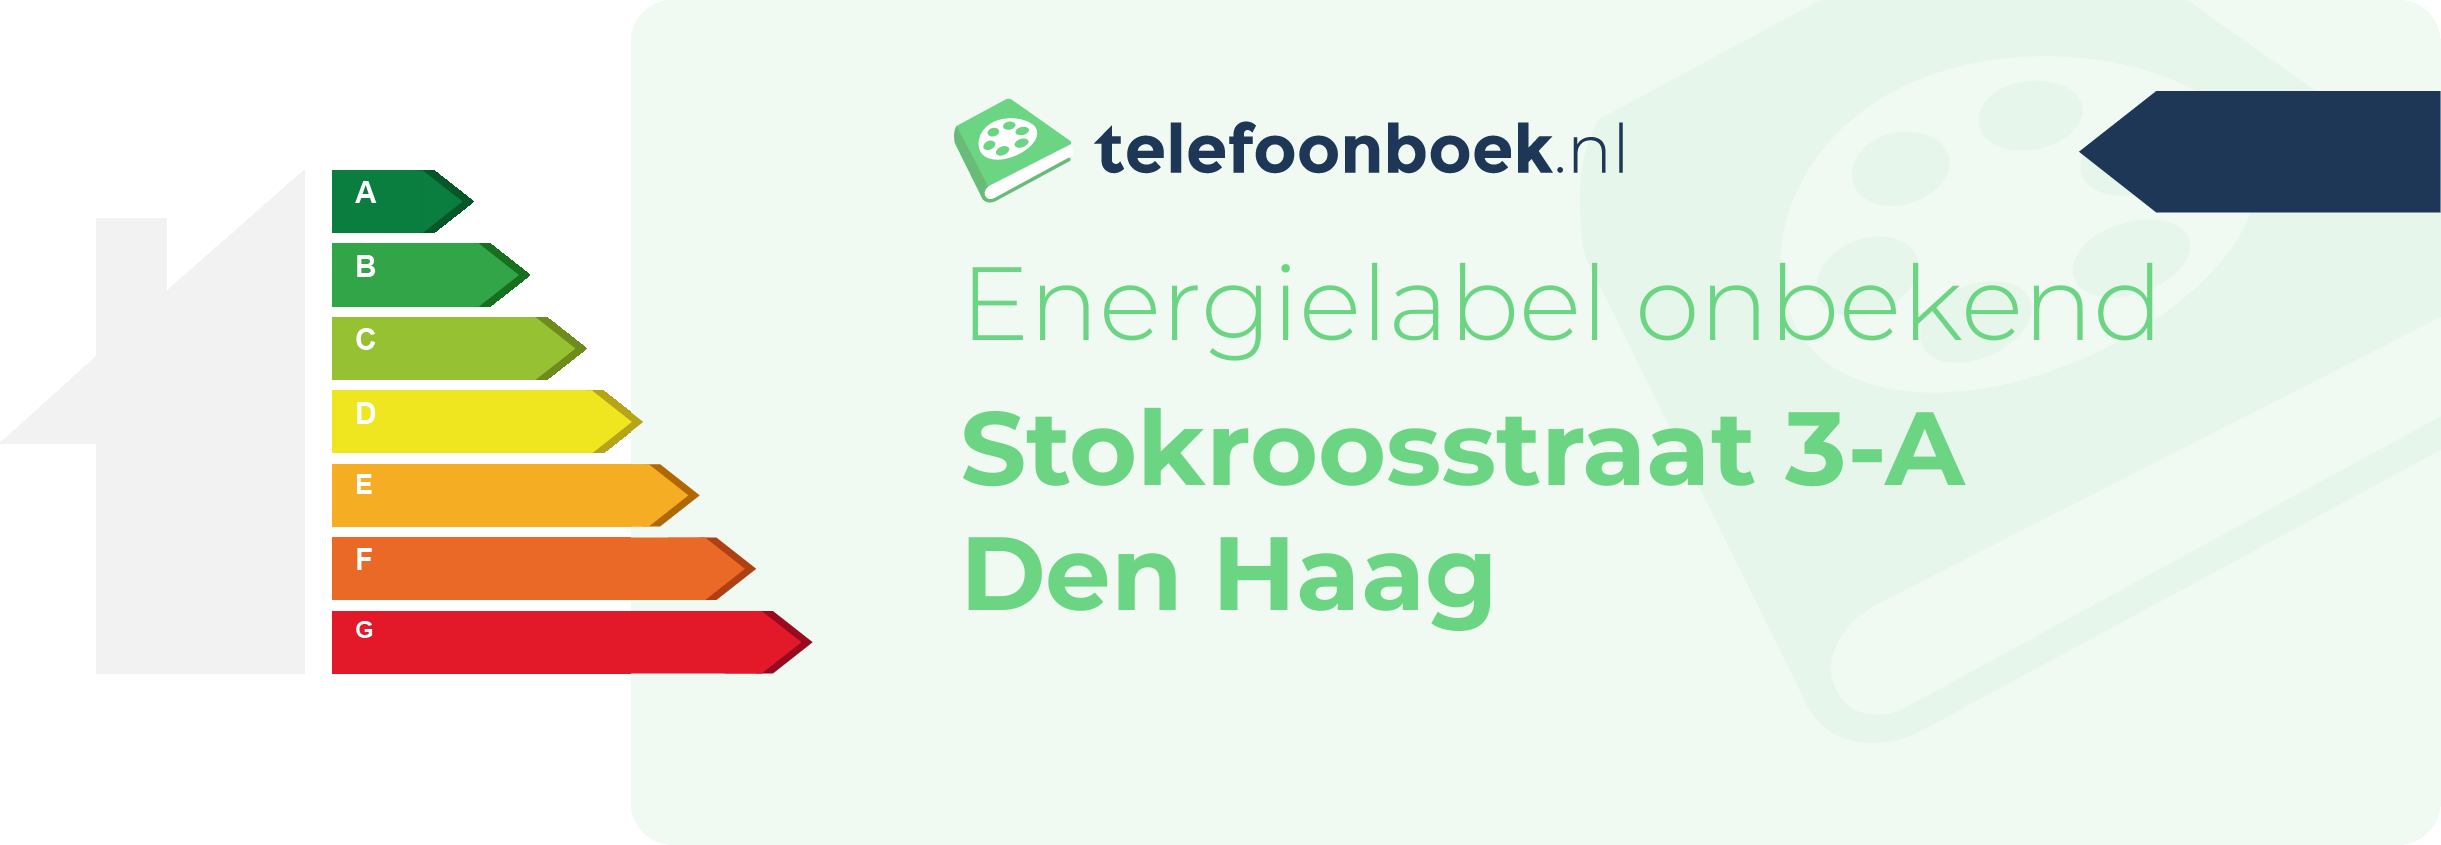 Energielabel Stokroosstraat 3-A Den Haag